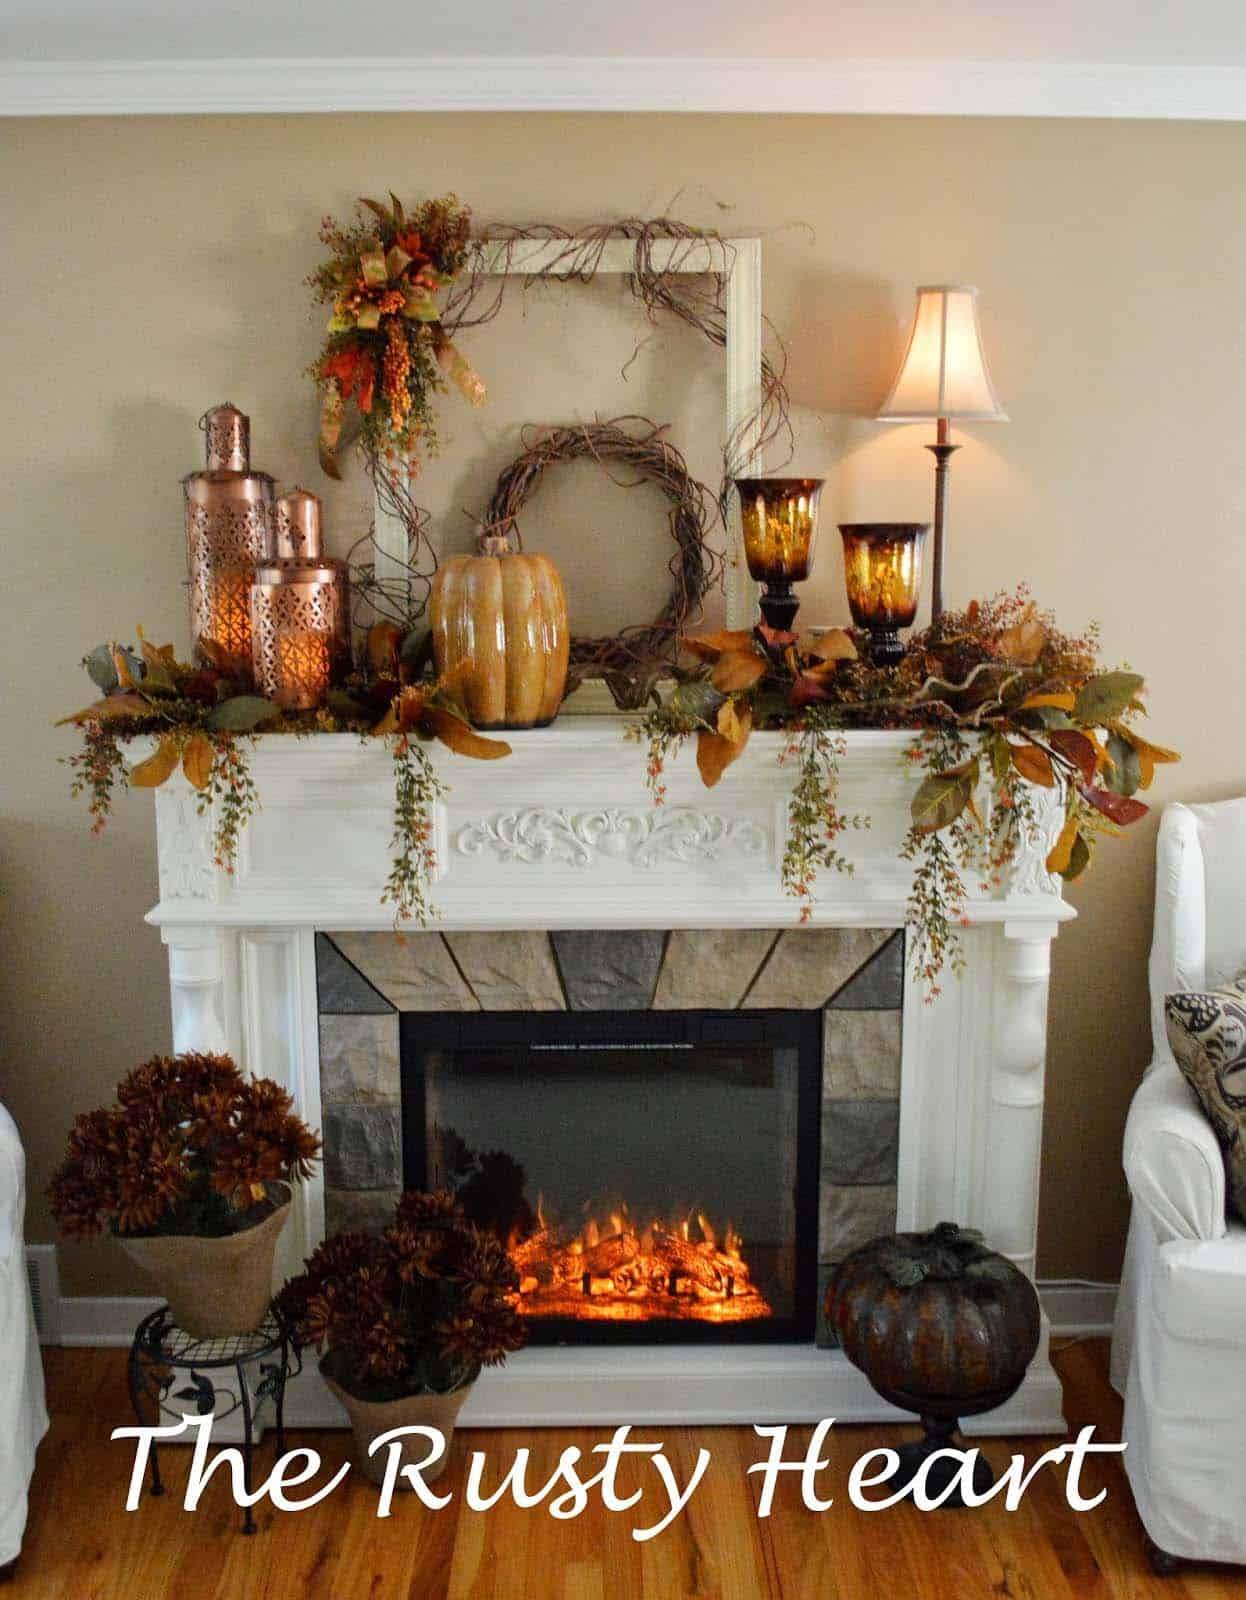 Fall Decorated Fireplace Mantels
 30 Amazing fall decorating ideas for your fireplace mantel